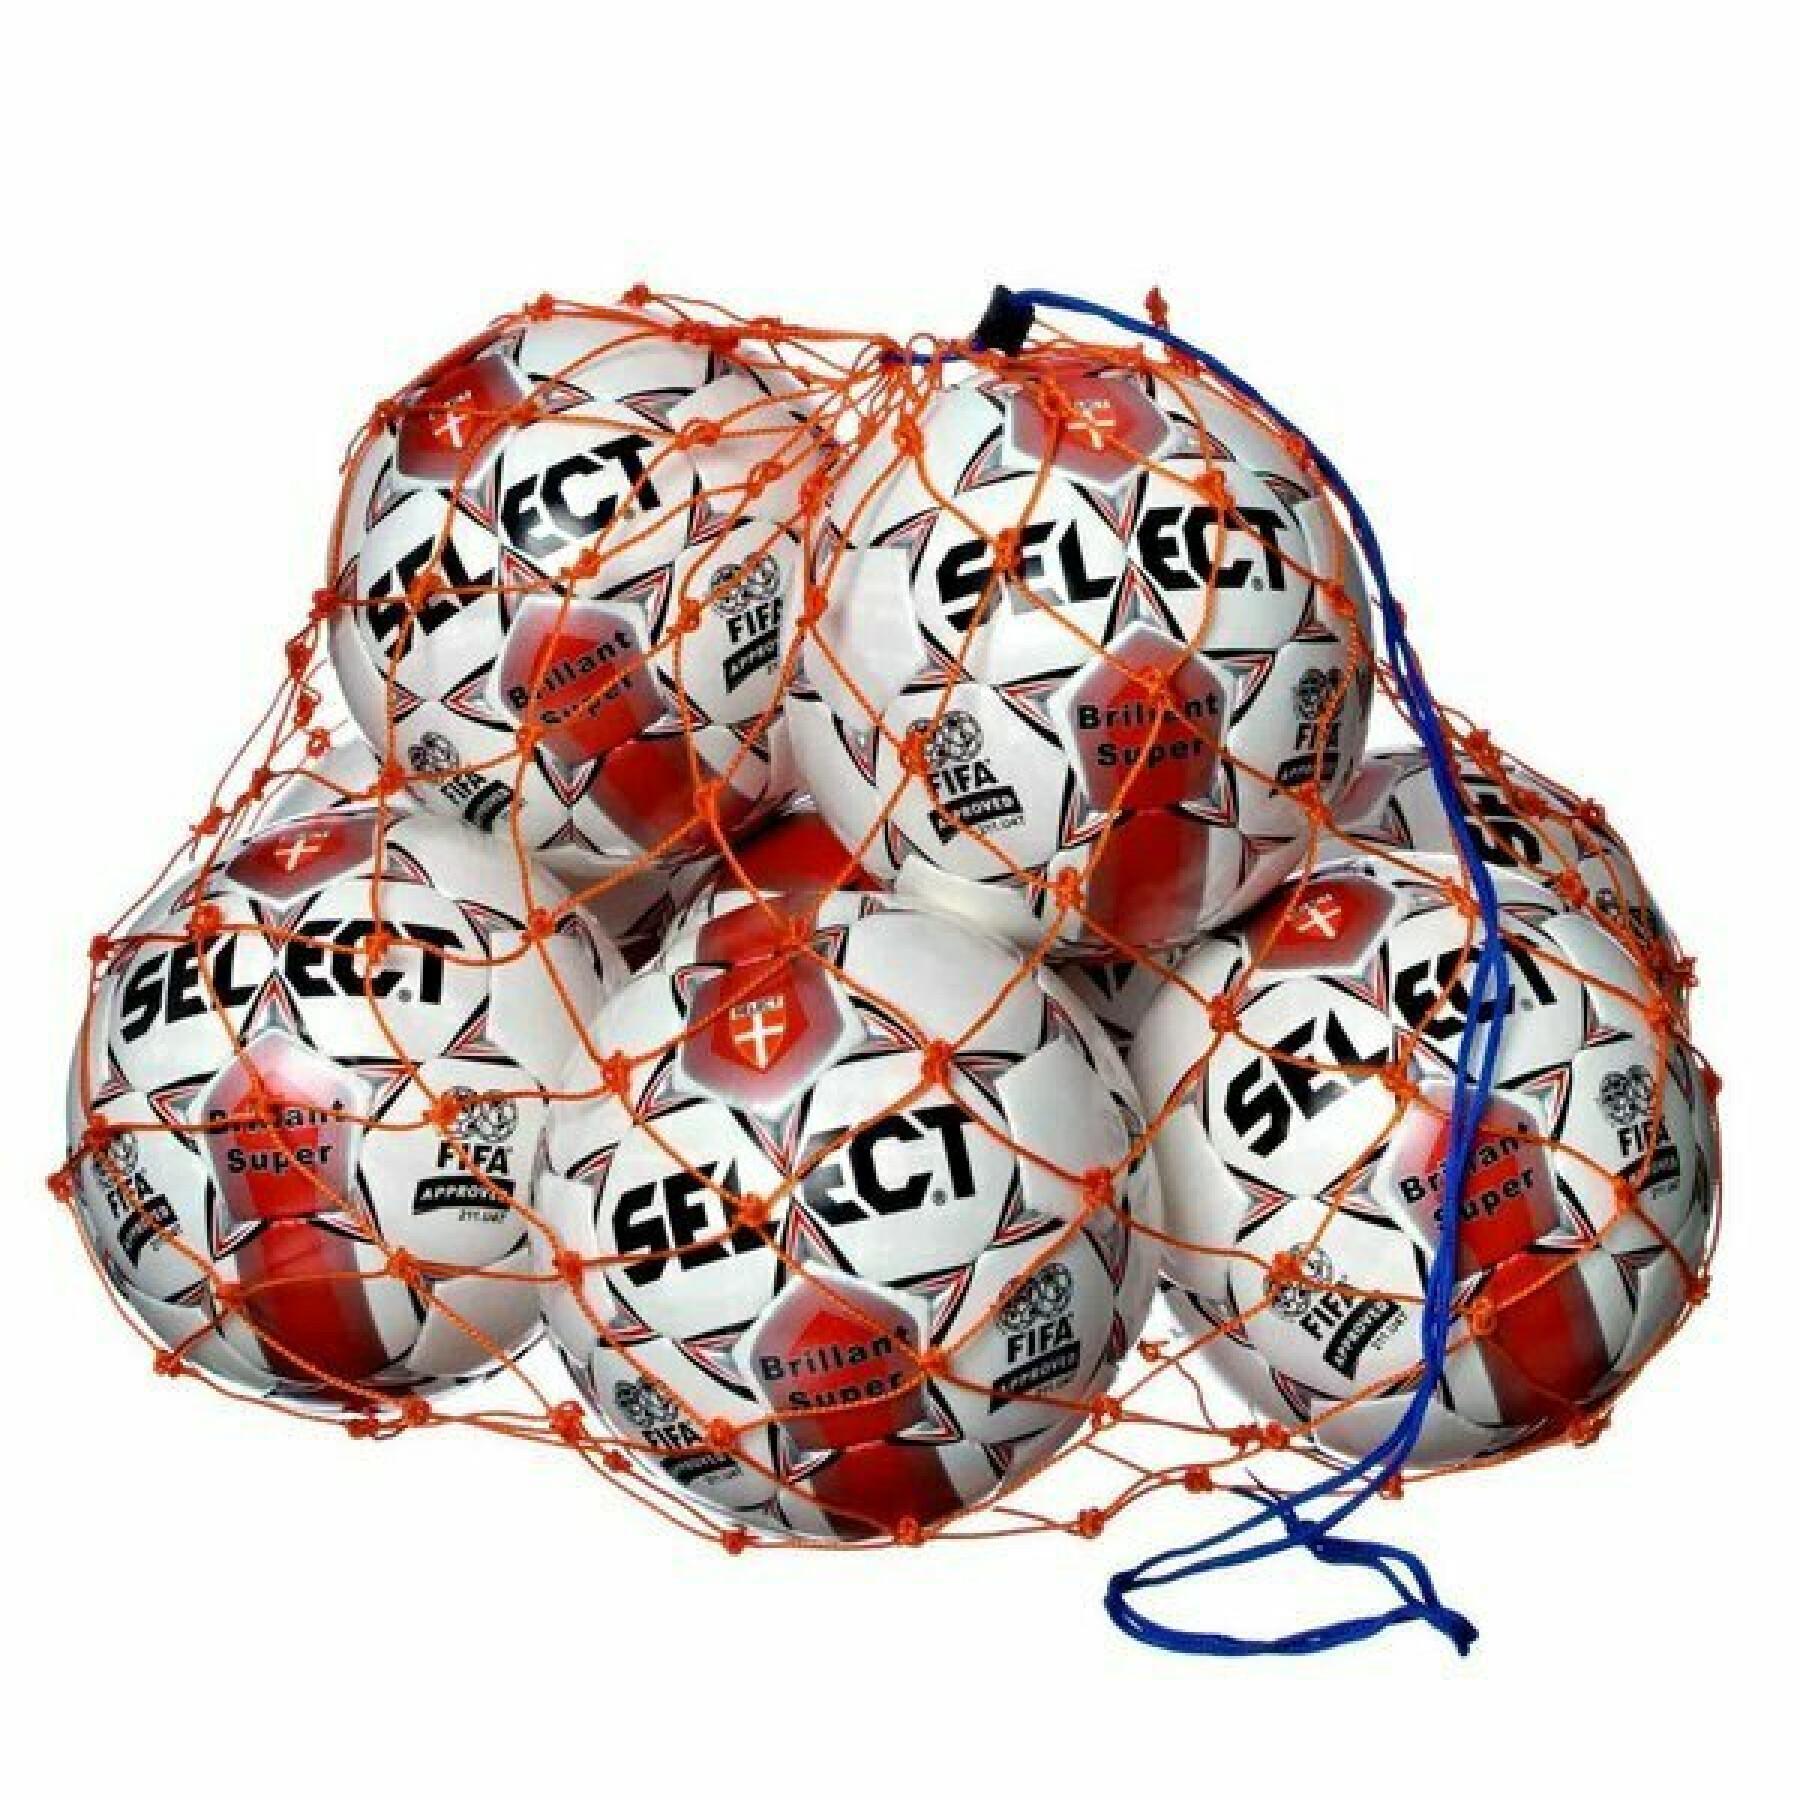 Ballongnät Select / 14 - 16 ballons